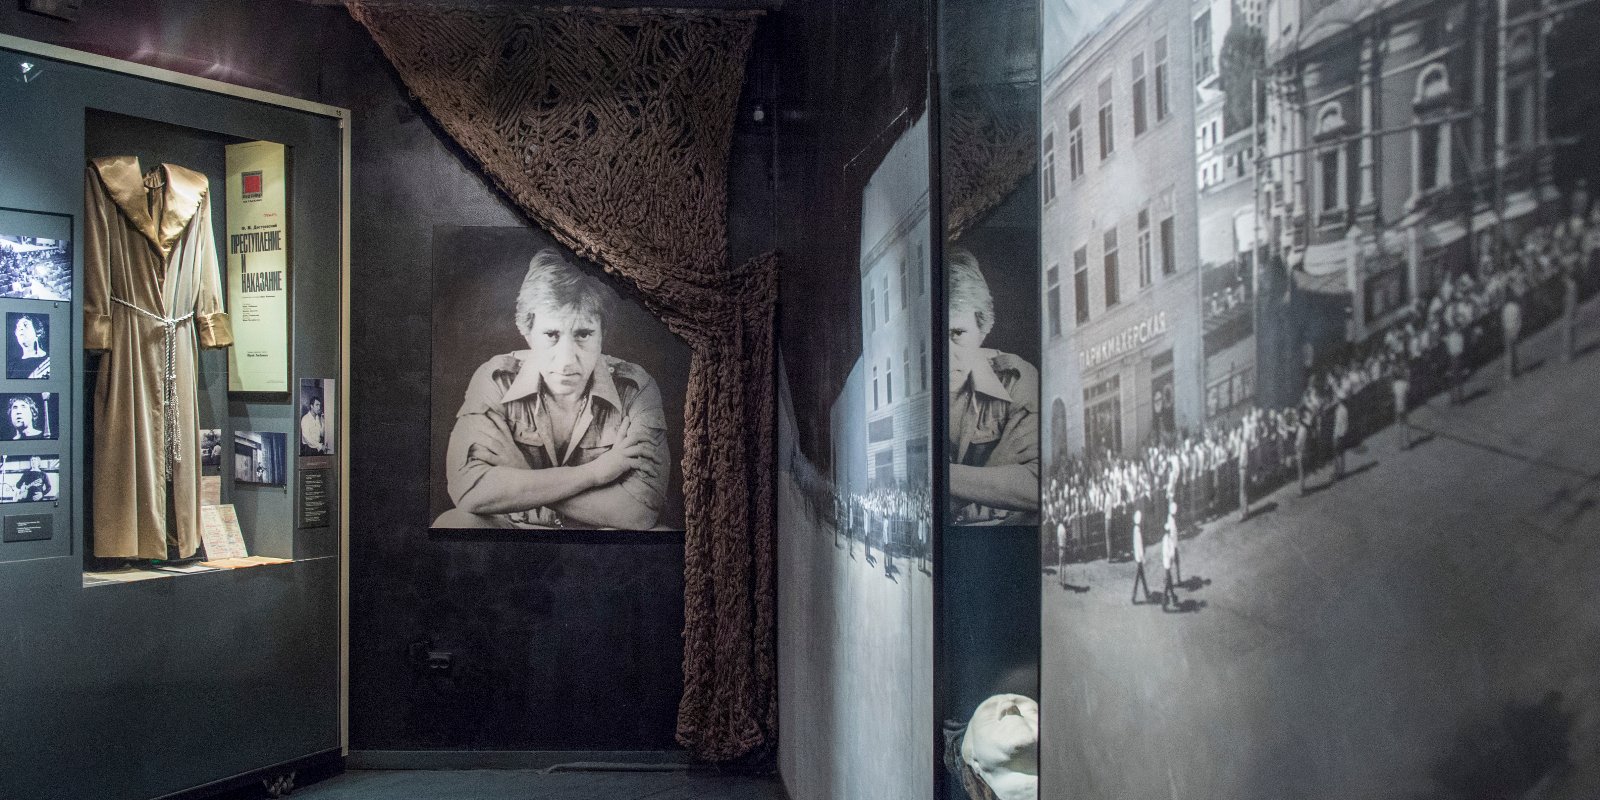 Побывать на кухне Высоцкого и увидеть веер Анны Павловой: какие музеи можно посетить бесплатно 24 марта